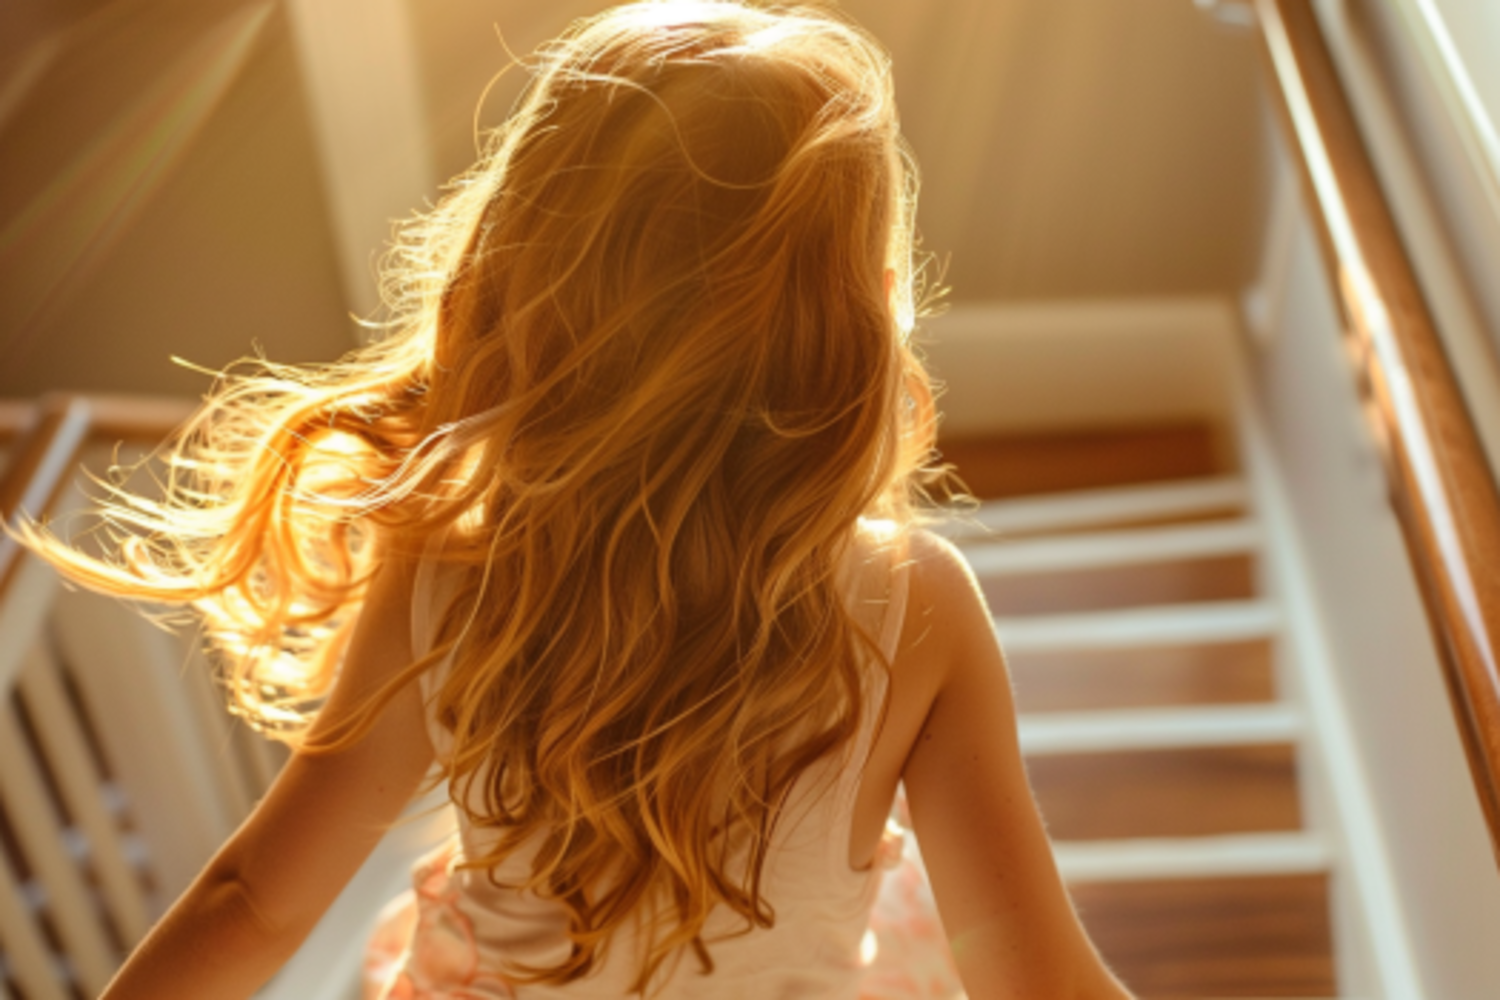 Una niña feliz corriendo escaleras abajo | Fuente: Midjourney